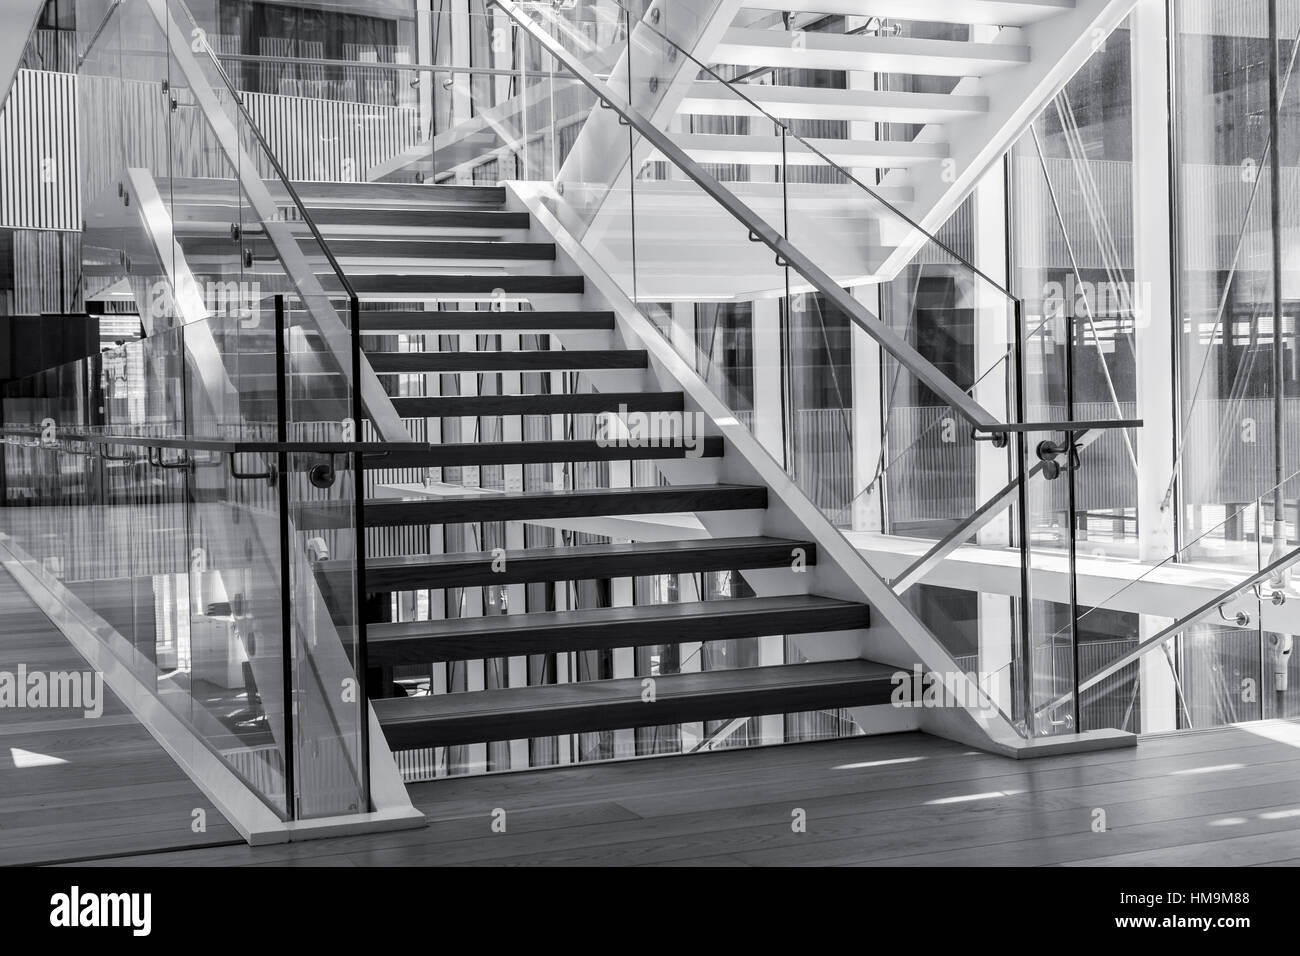 Escalier intérieur dans un bâtiment d'architecture moderne. Haut contraste noir et blanc photo Banque D'Images